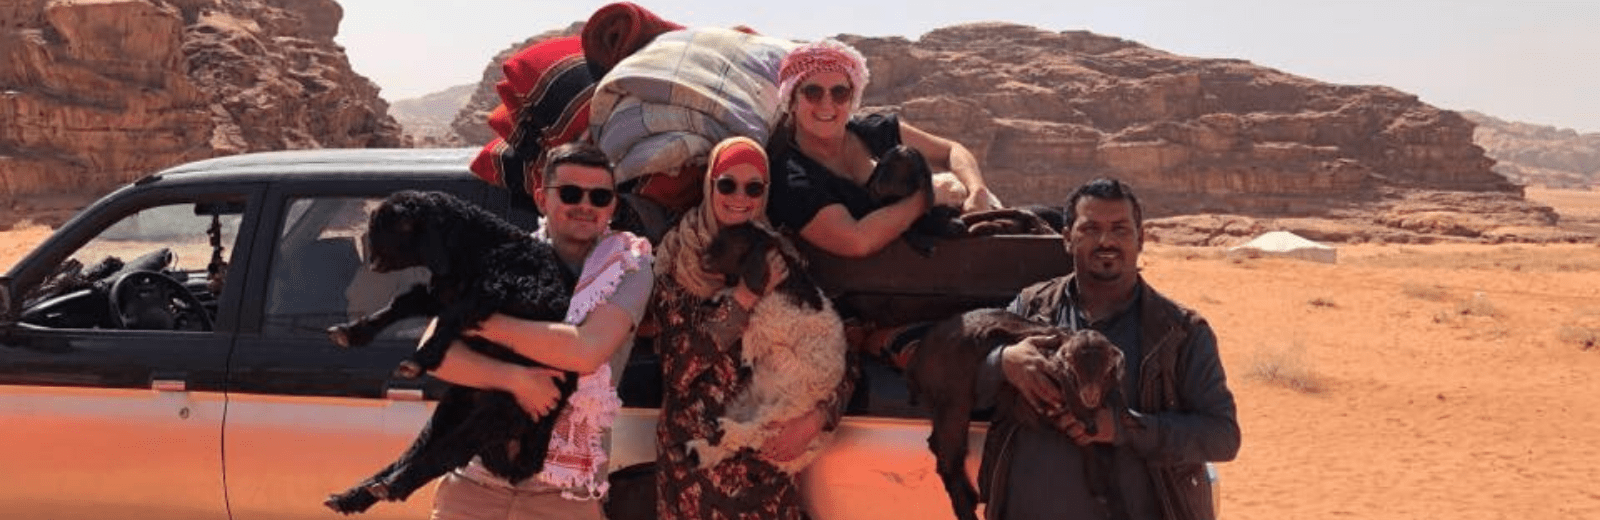 Wadi Rum jeep tour met overnachting. Jordan Desert Journeys